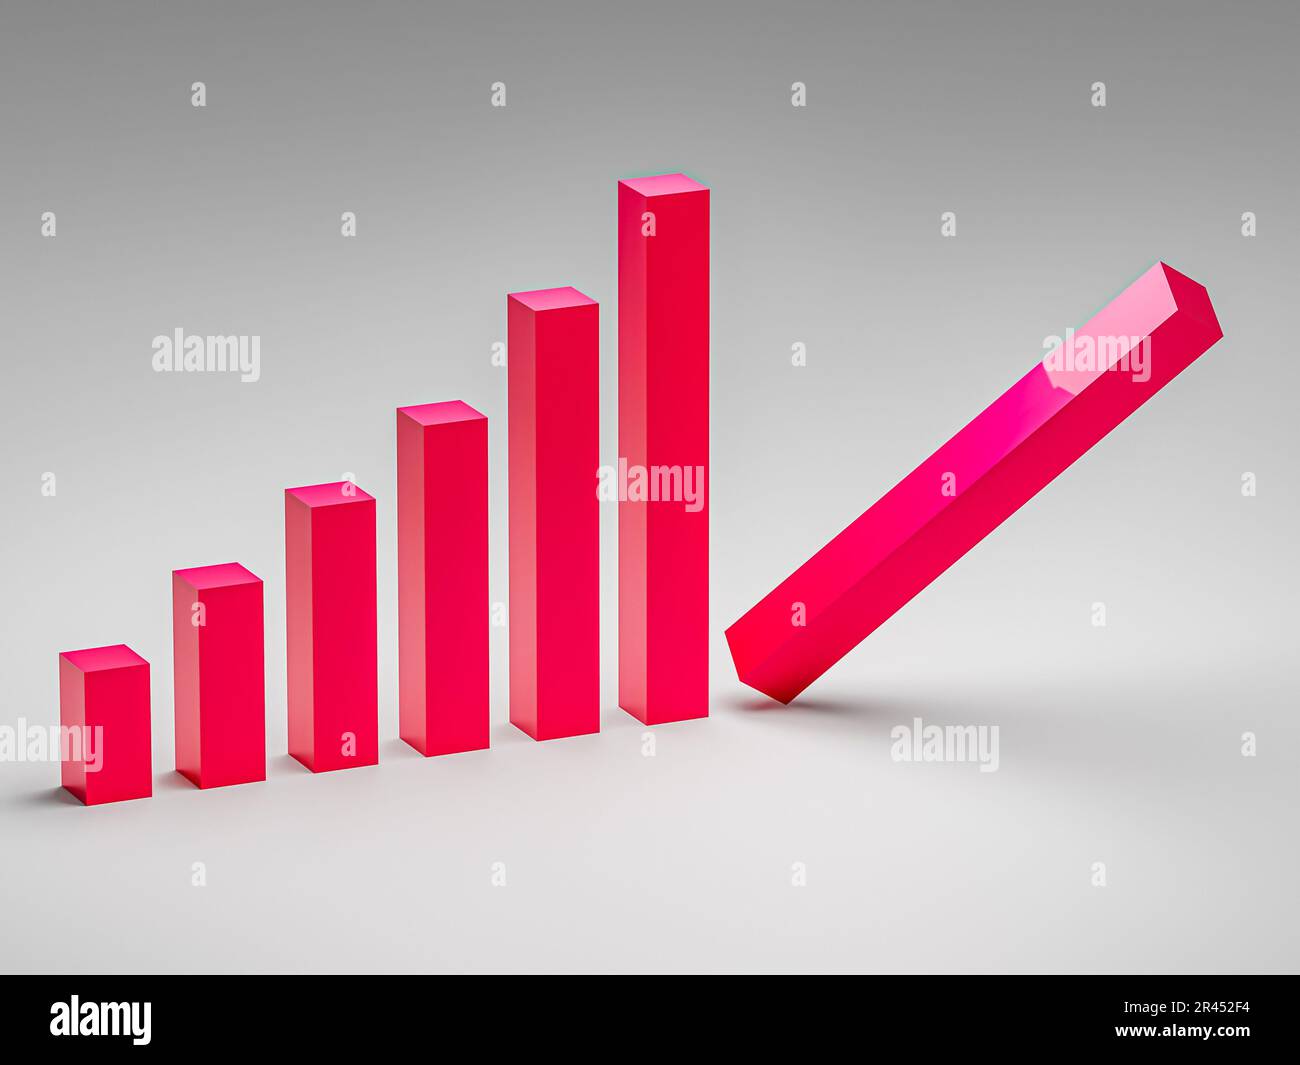 Fallimento e concetto di business. Grafico fallimentare con la recessione. rendering 3d Foto Stock